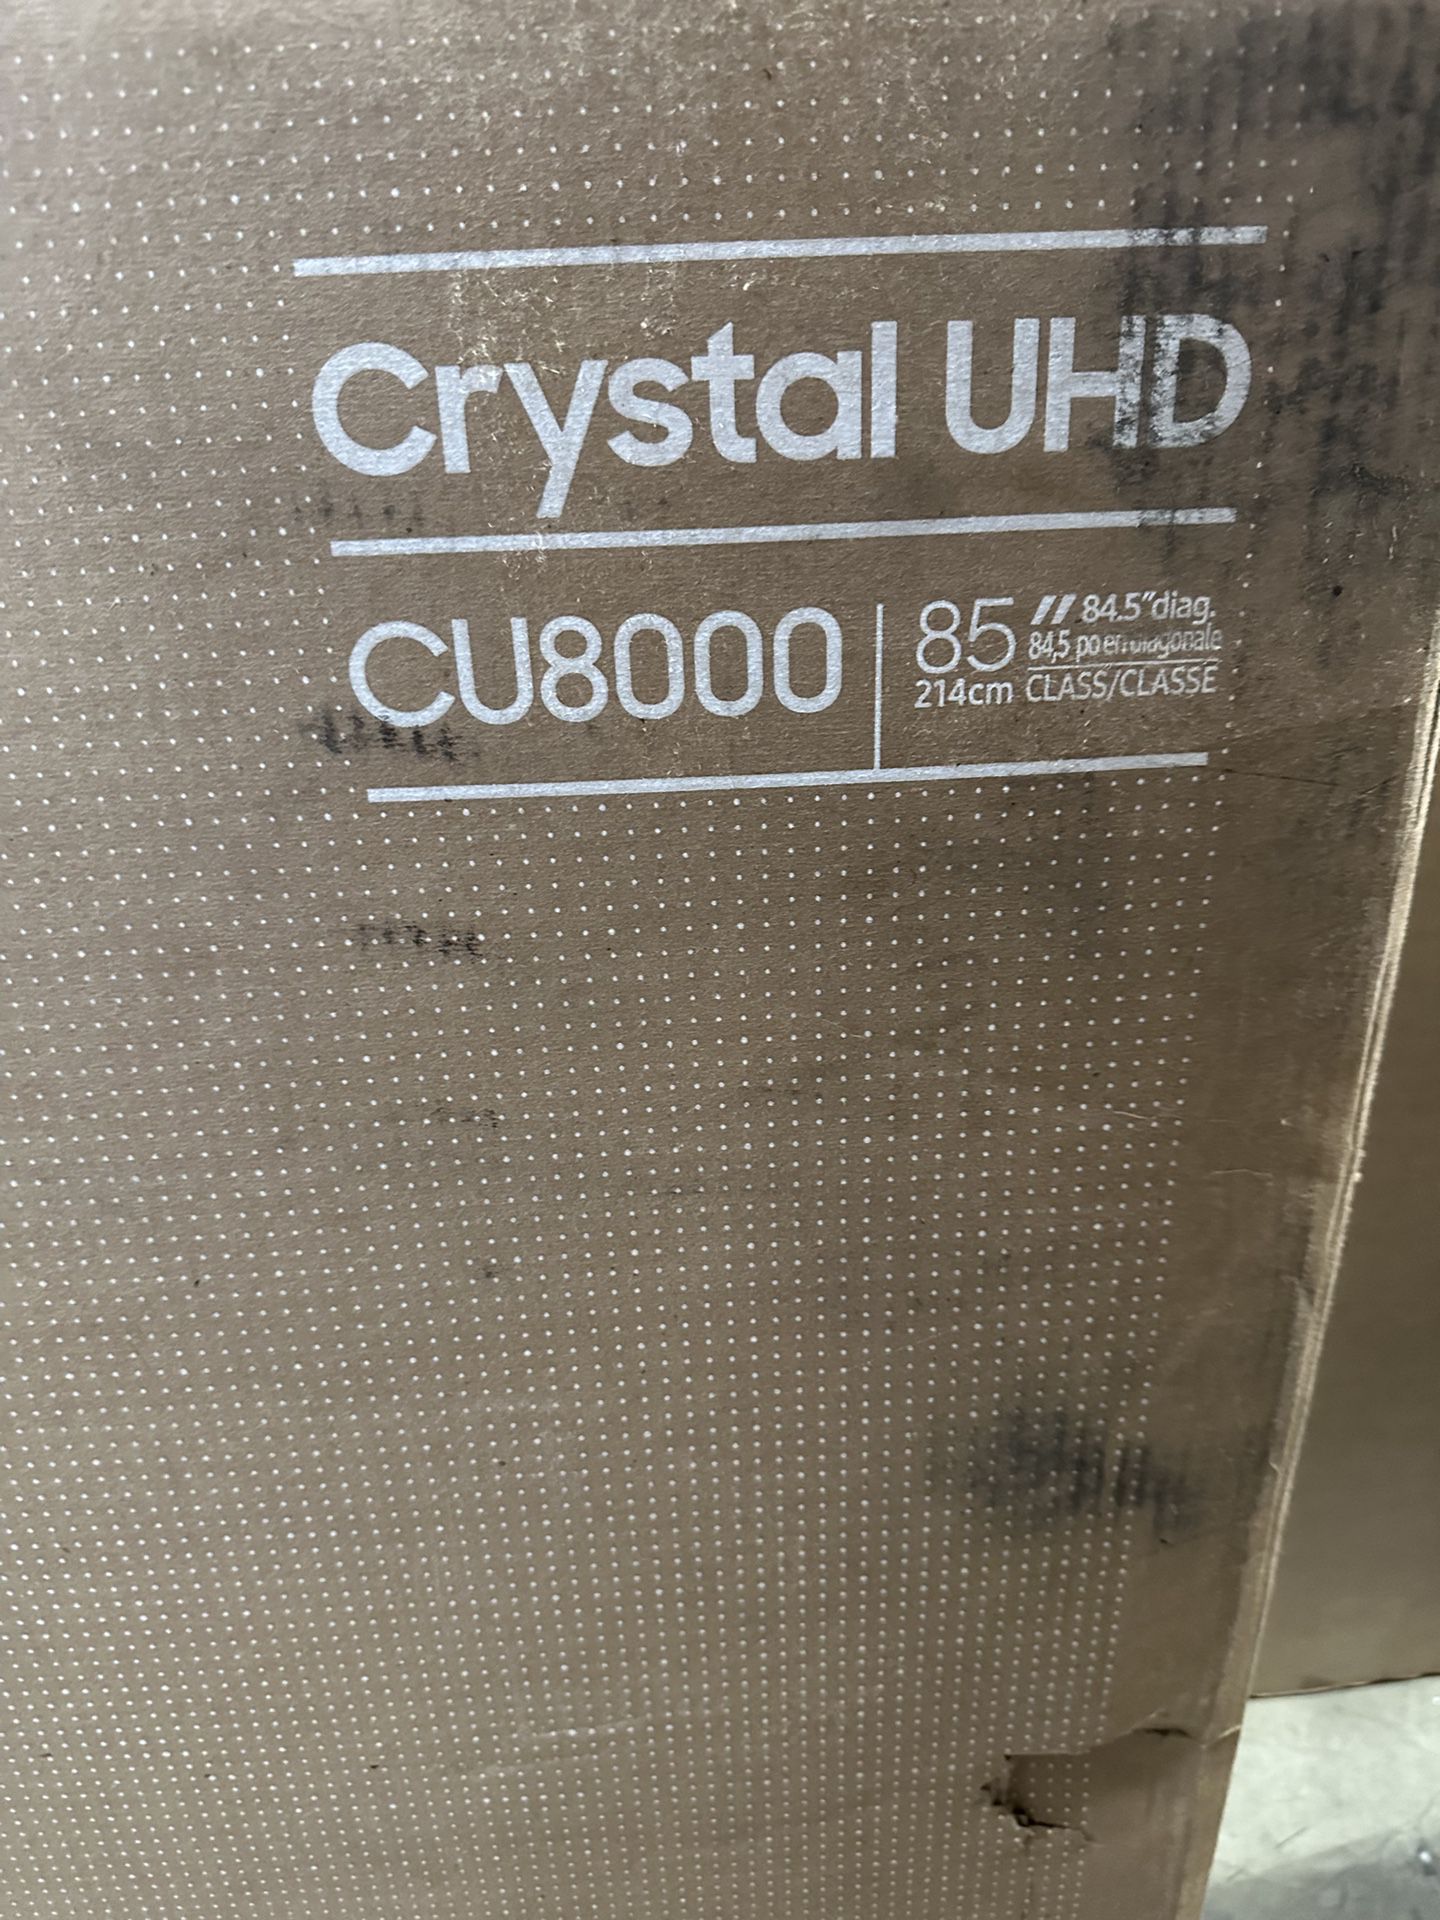 Samsung - 85” Class Cu8000 Crystal UHD 4K Smart Tizen Tv